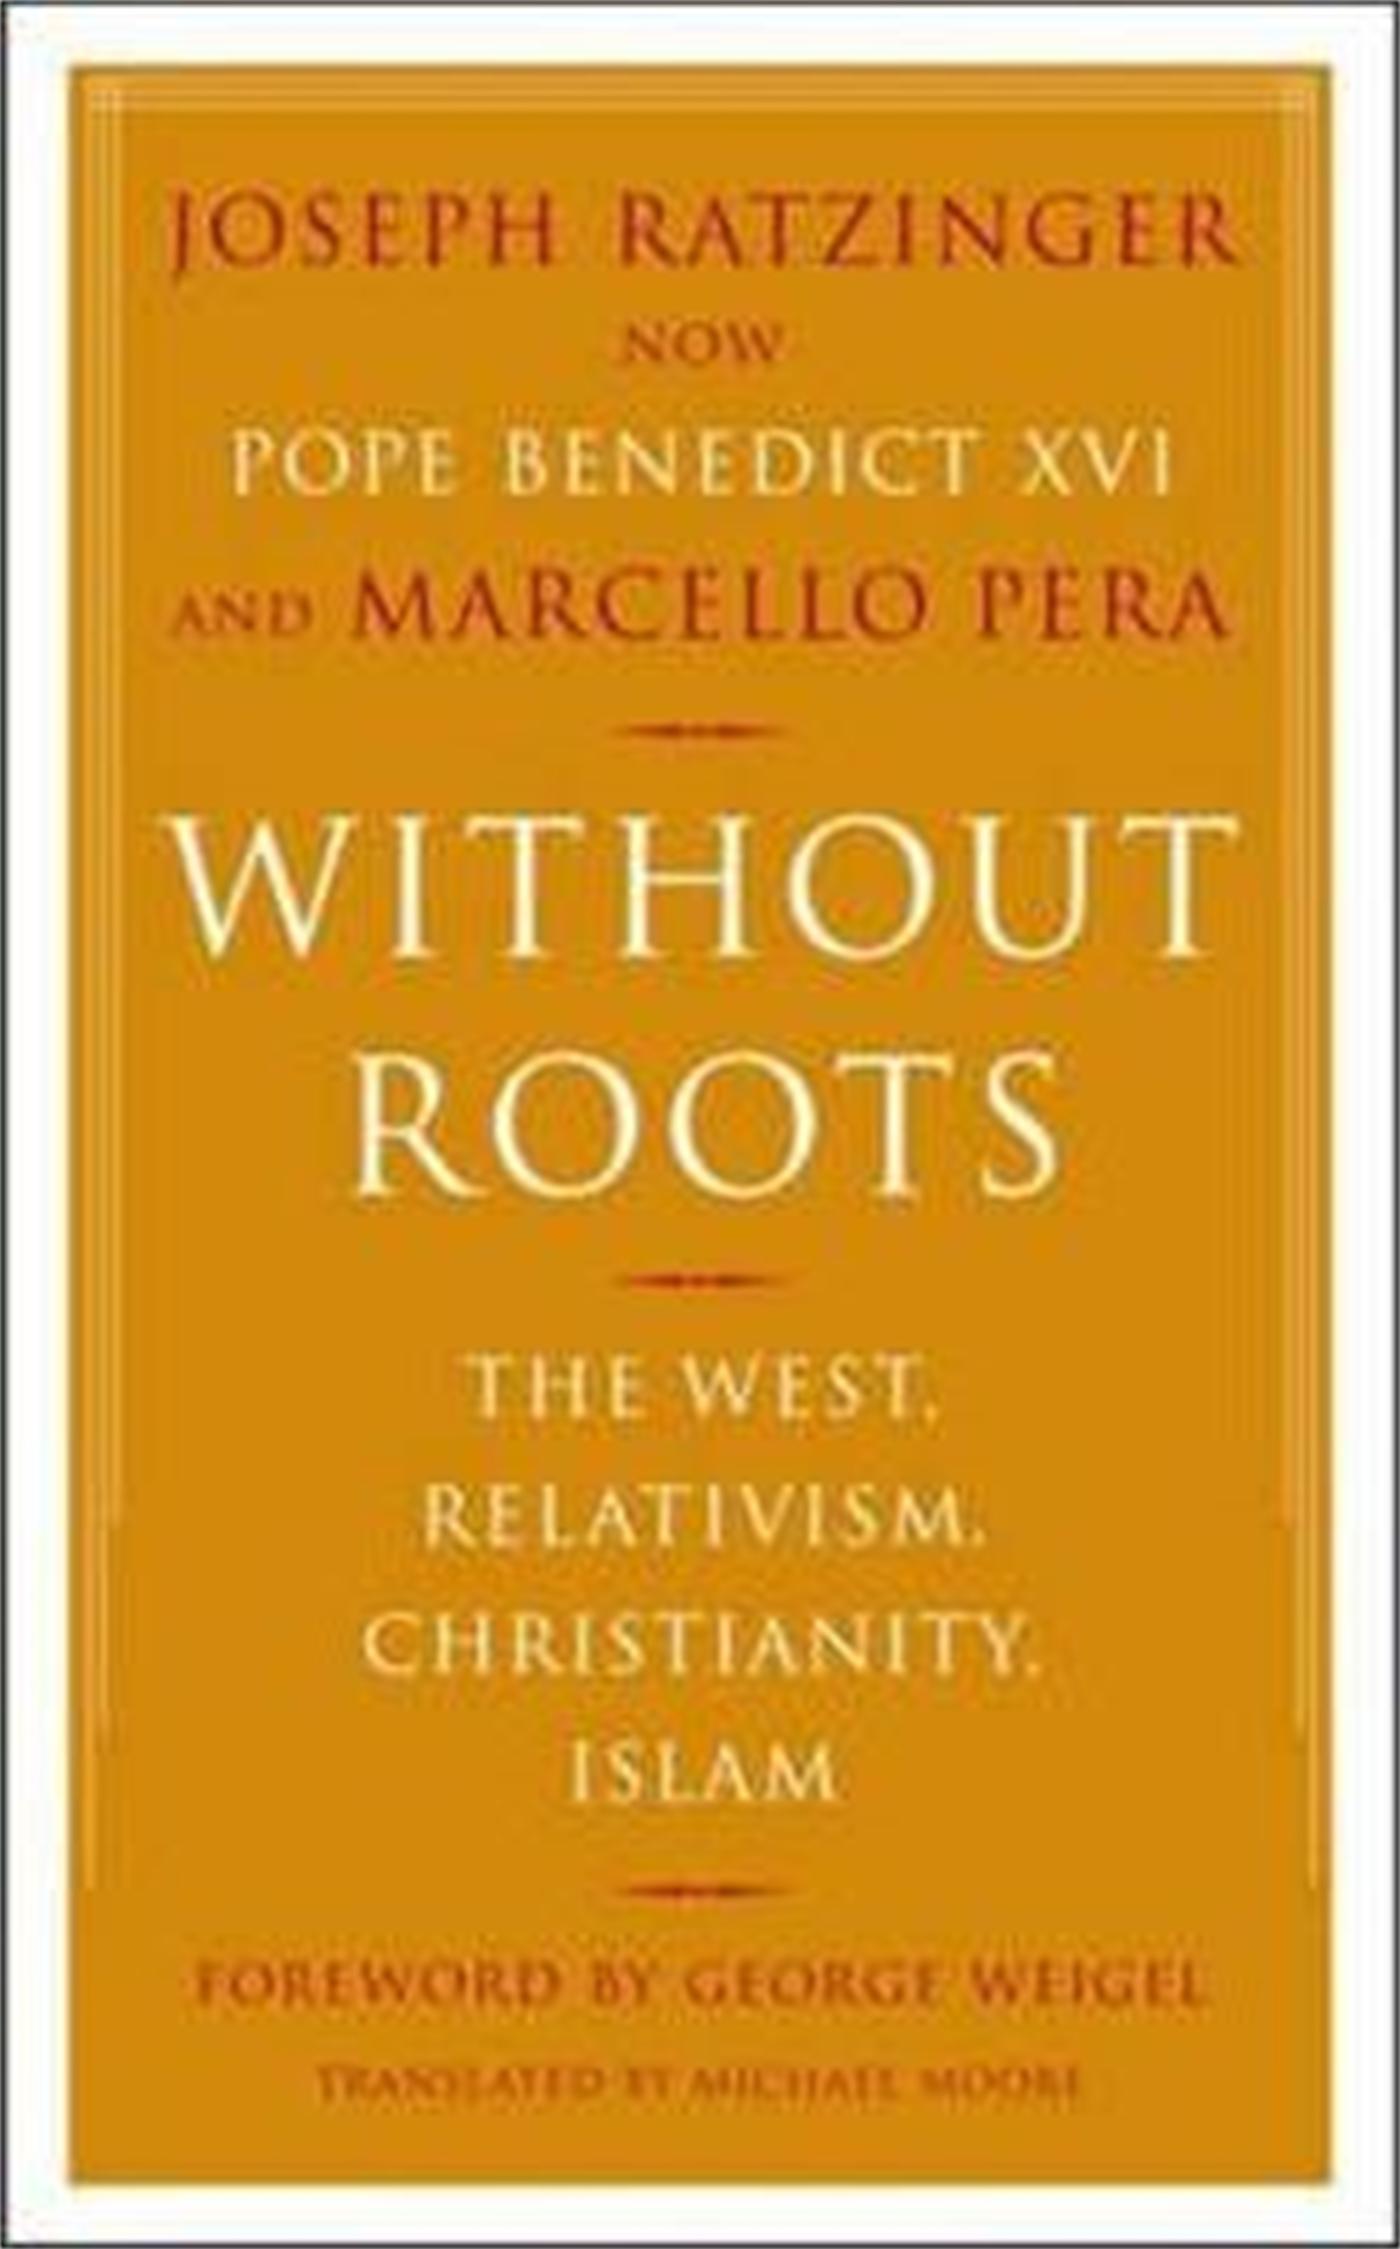 Without Roots / Europe, Relativism, Christianity, Islam / Joseph Ratzinger (u. a.) / Taschenbuch / Kartoniert / Broschiert / Englisch / 2007 / Basic Books / EAN 9780465006274 - Ratzinger, Joseph